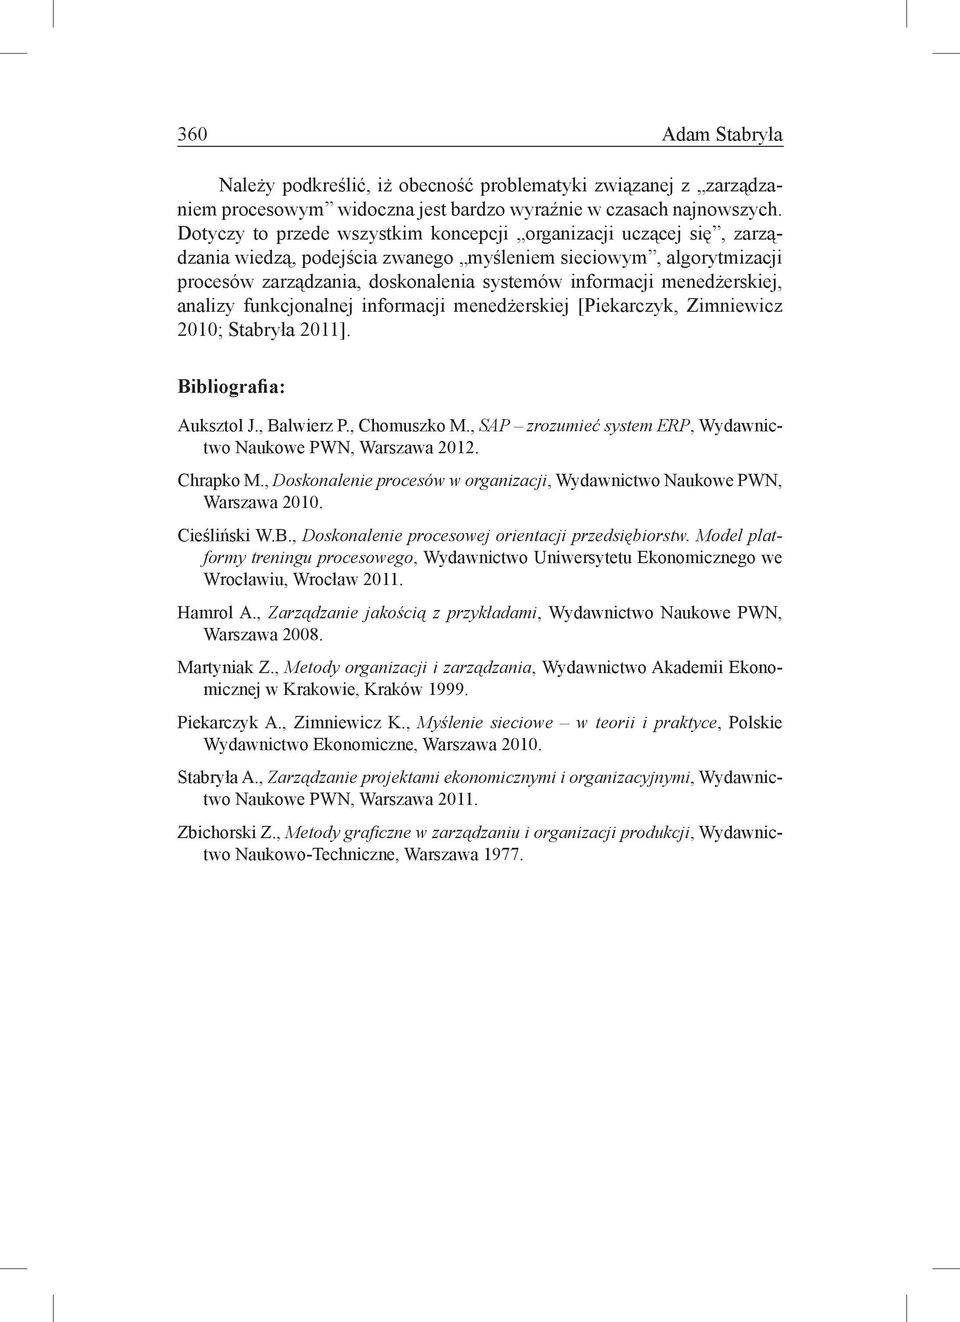 menedżerskiej, analizy funkcjonalnej informacji menedżerskiej [Piekarczyk, Zimniewicz 2010; Stabryła 2011]. Bibliografia: Auksztol J., Balwierz P., Chomuszko M.